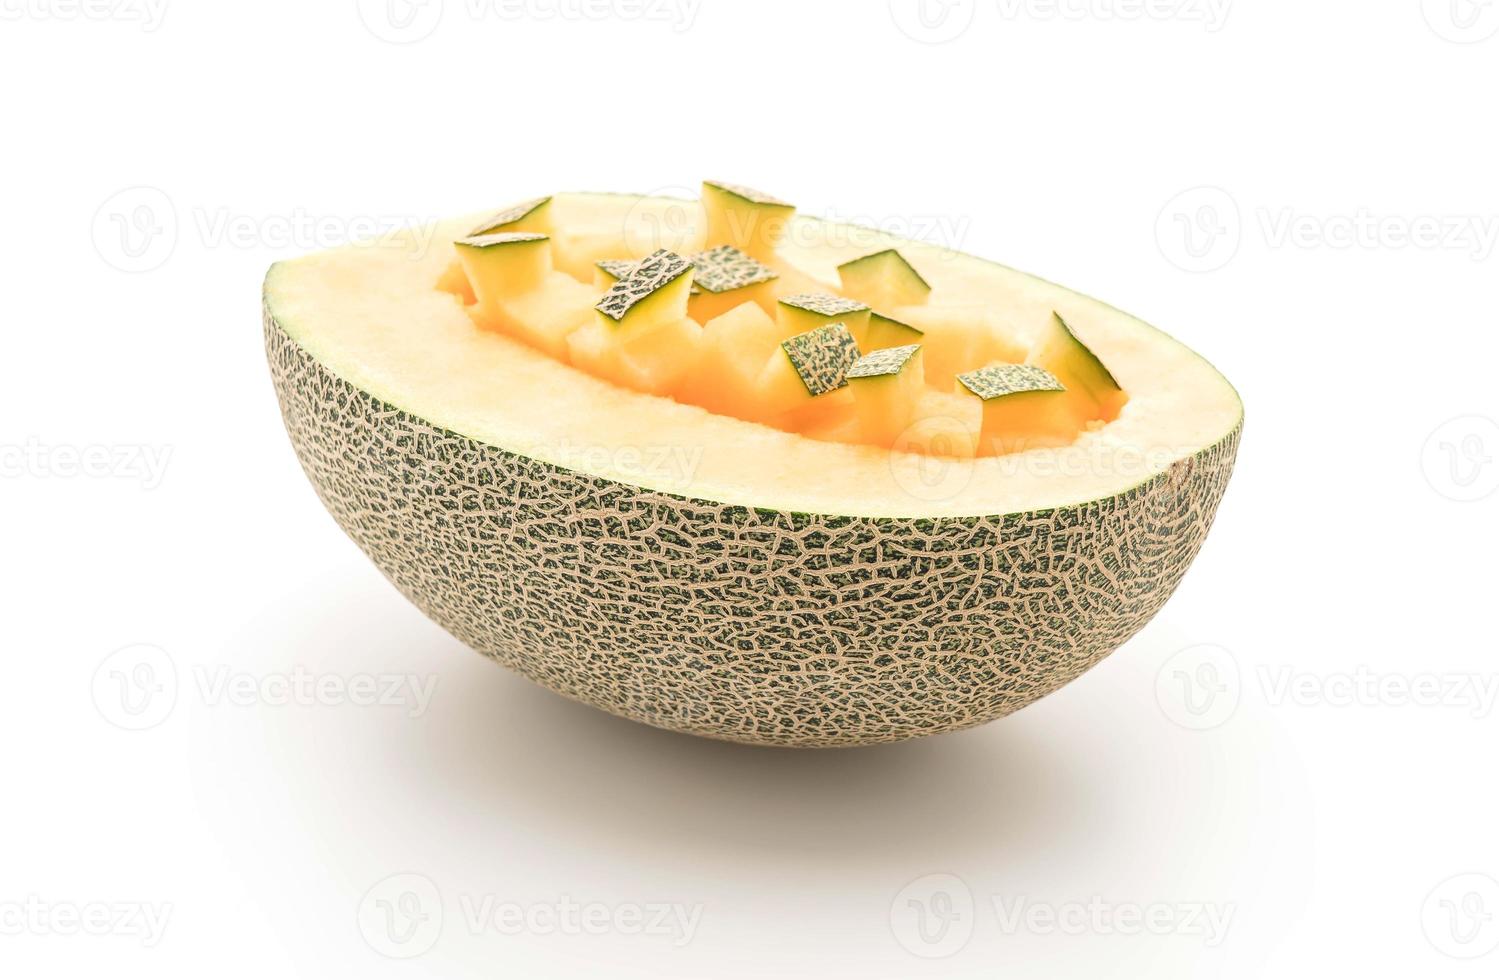 melone cantalupo su sfondo bianco foto